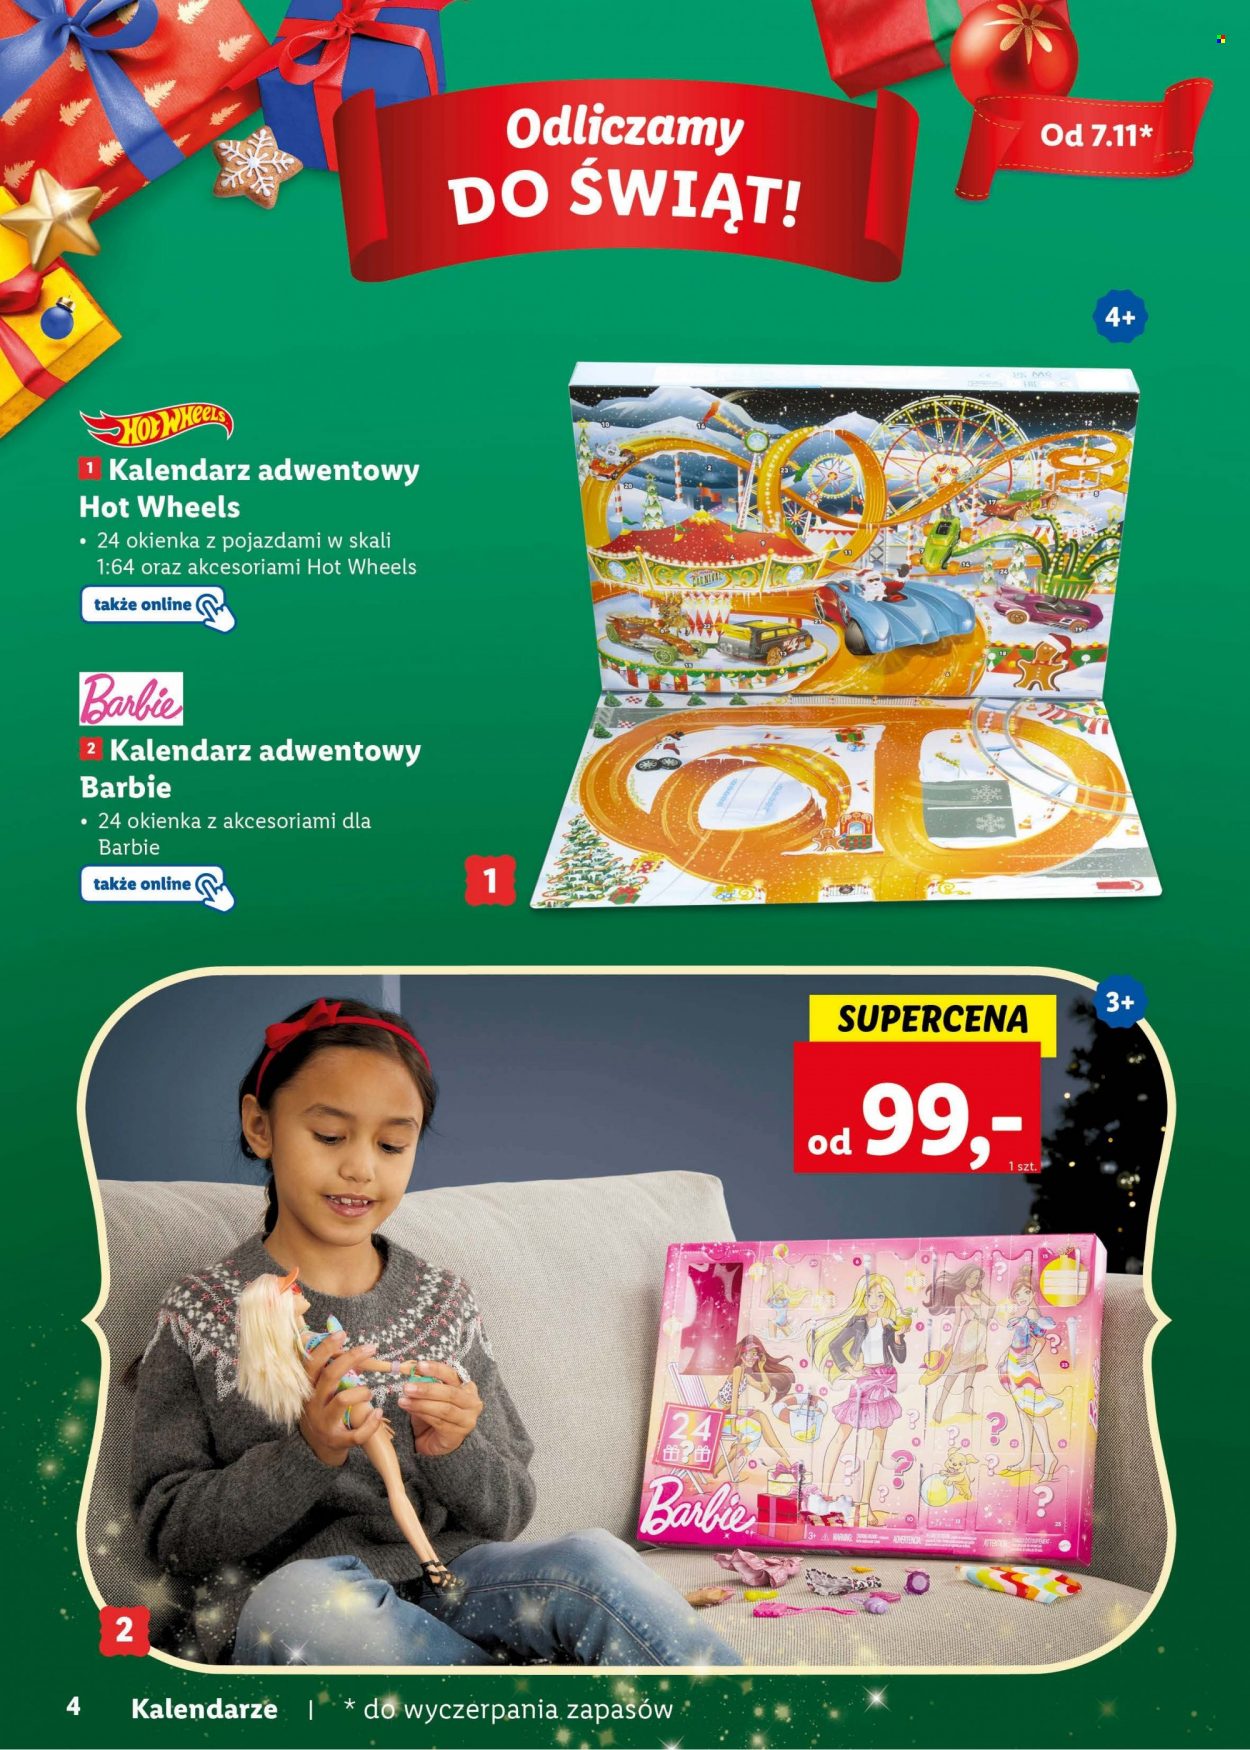 Gazetka Lidl - Produkty w akcji - kalendarz adwentowy, Barbie, Hot Wheels. Strona 4.